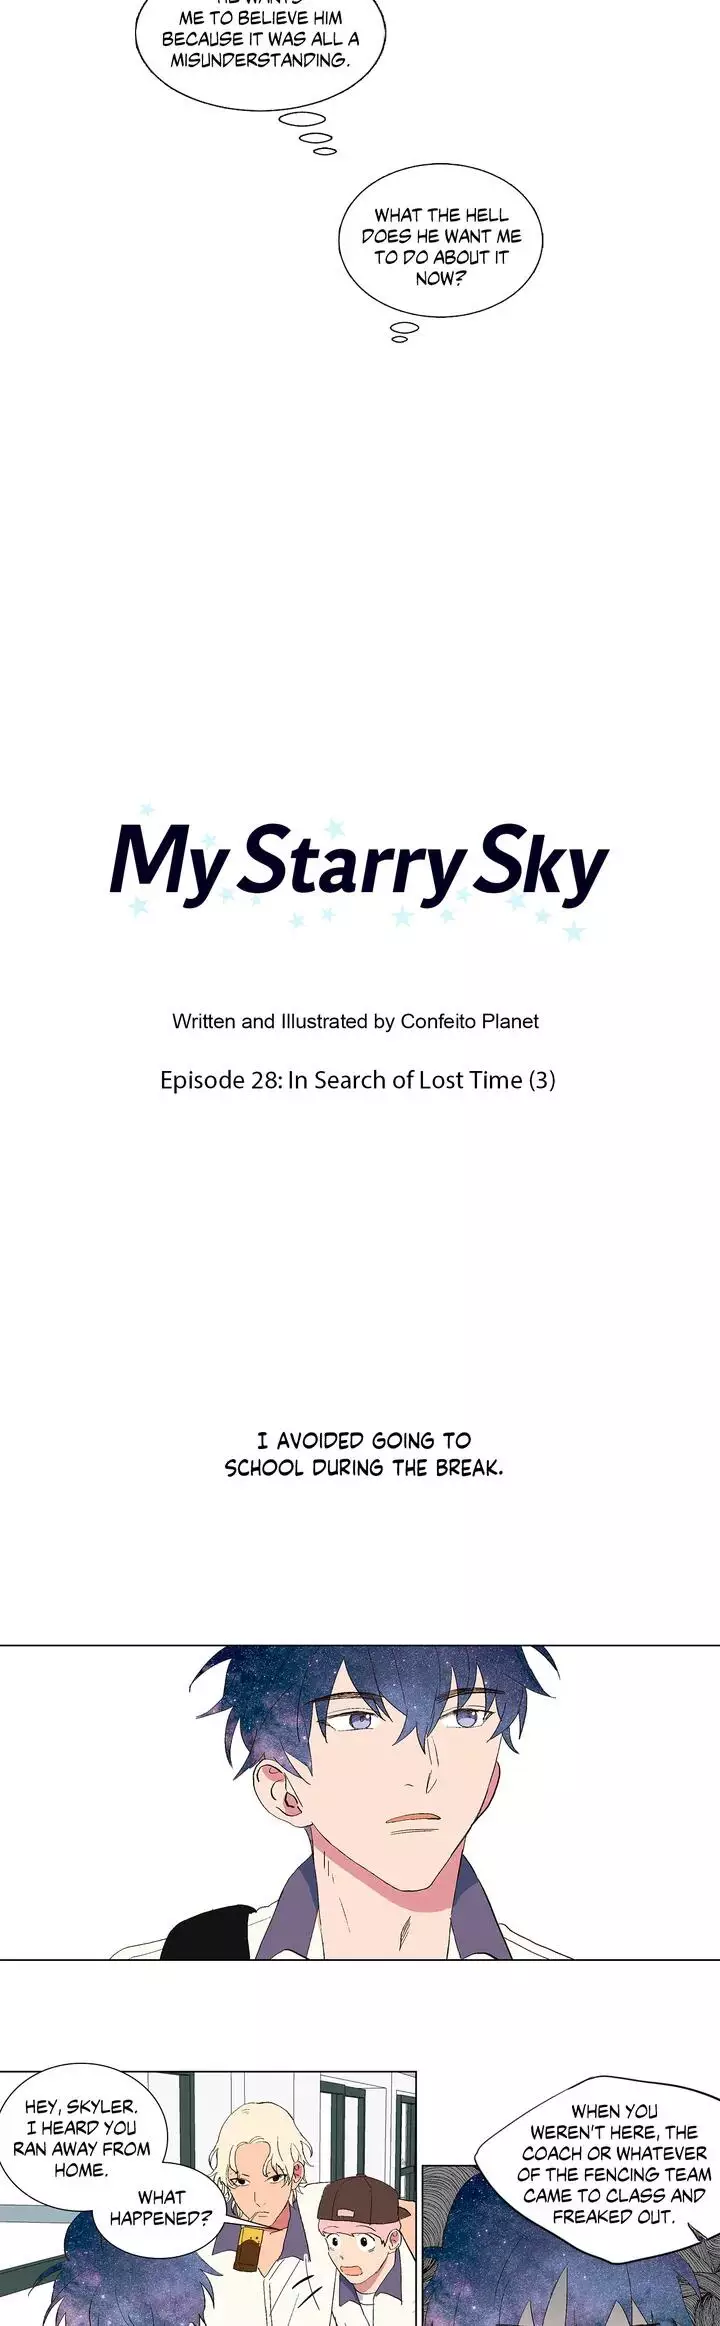 My Starry Sky - 28 page 8-433347e7